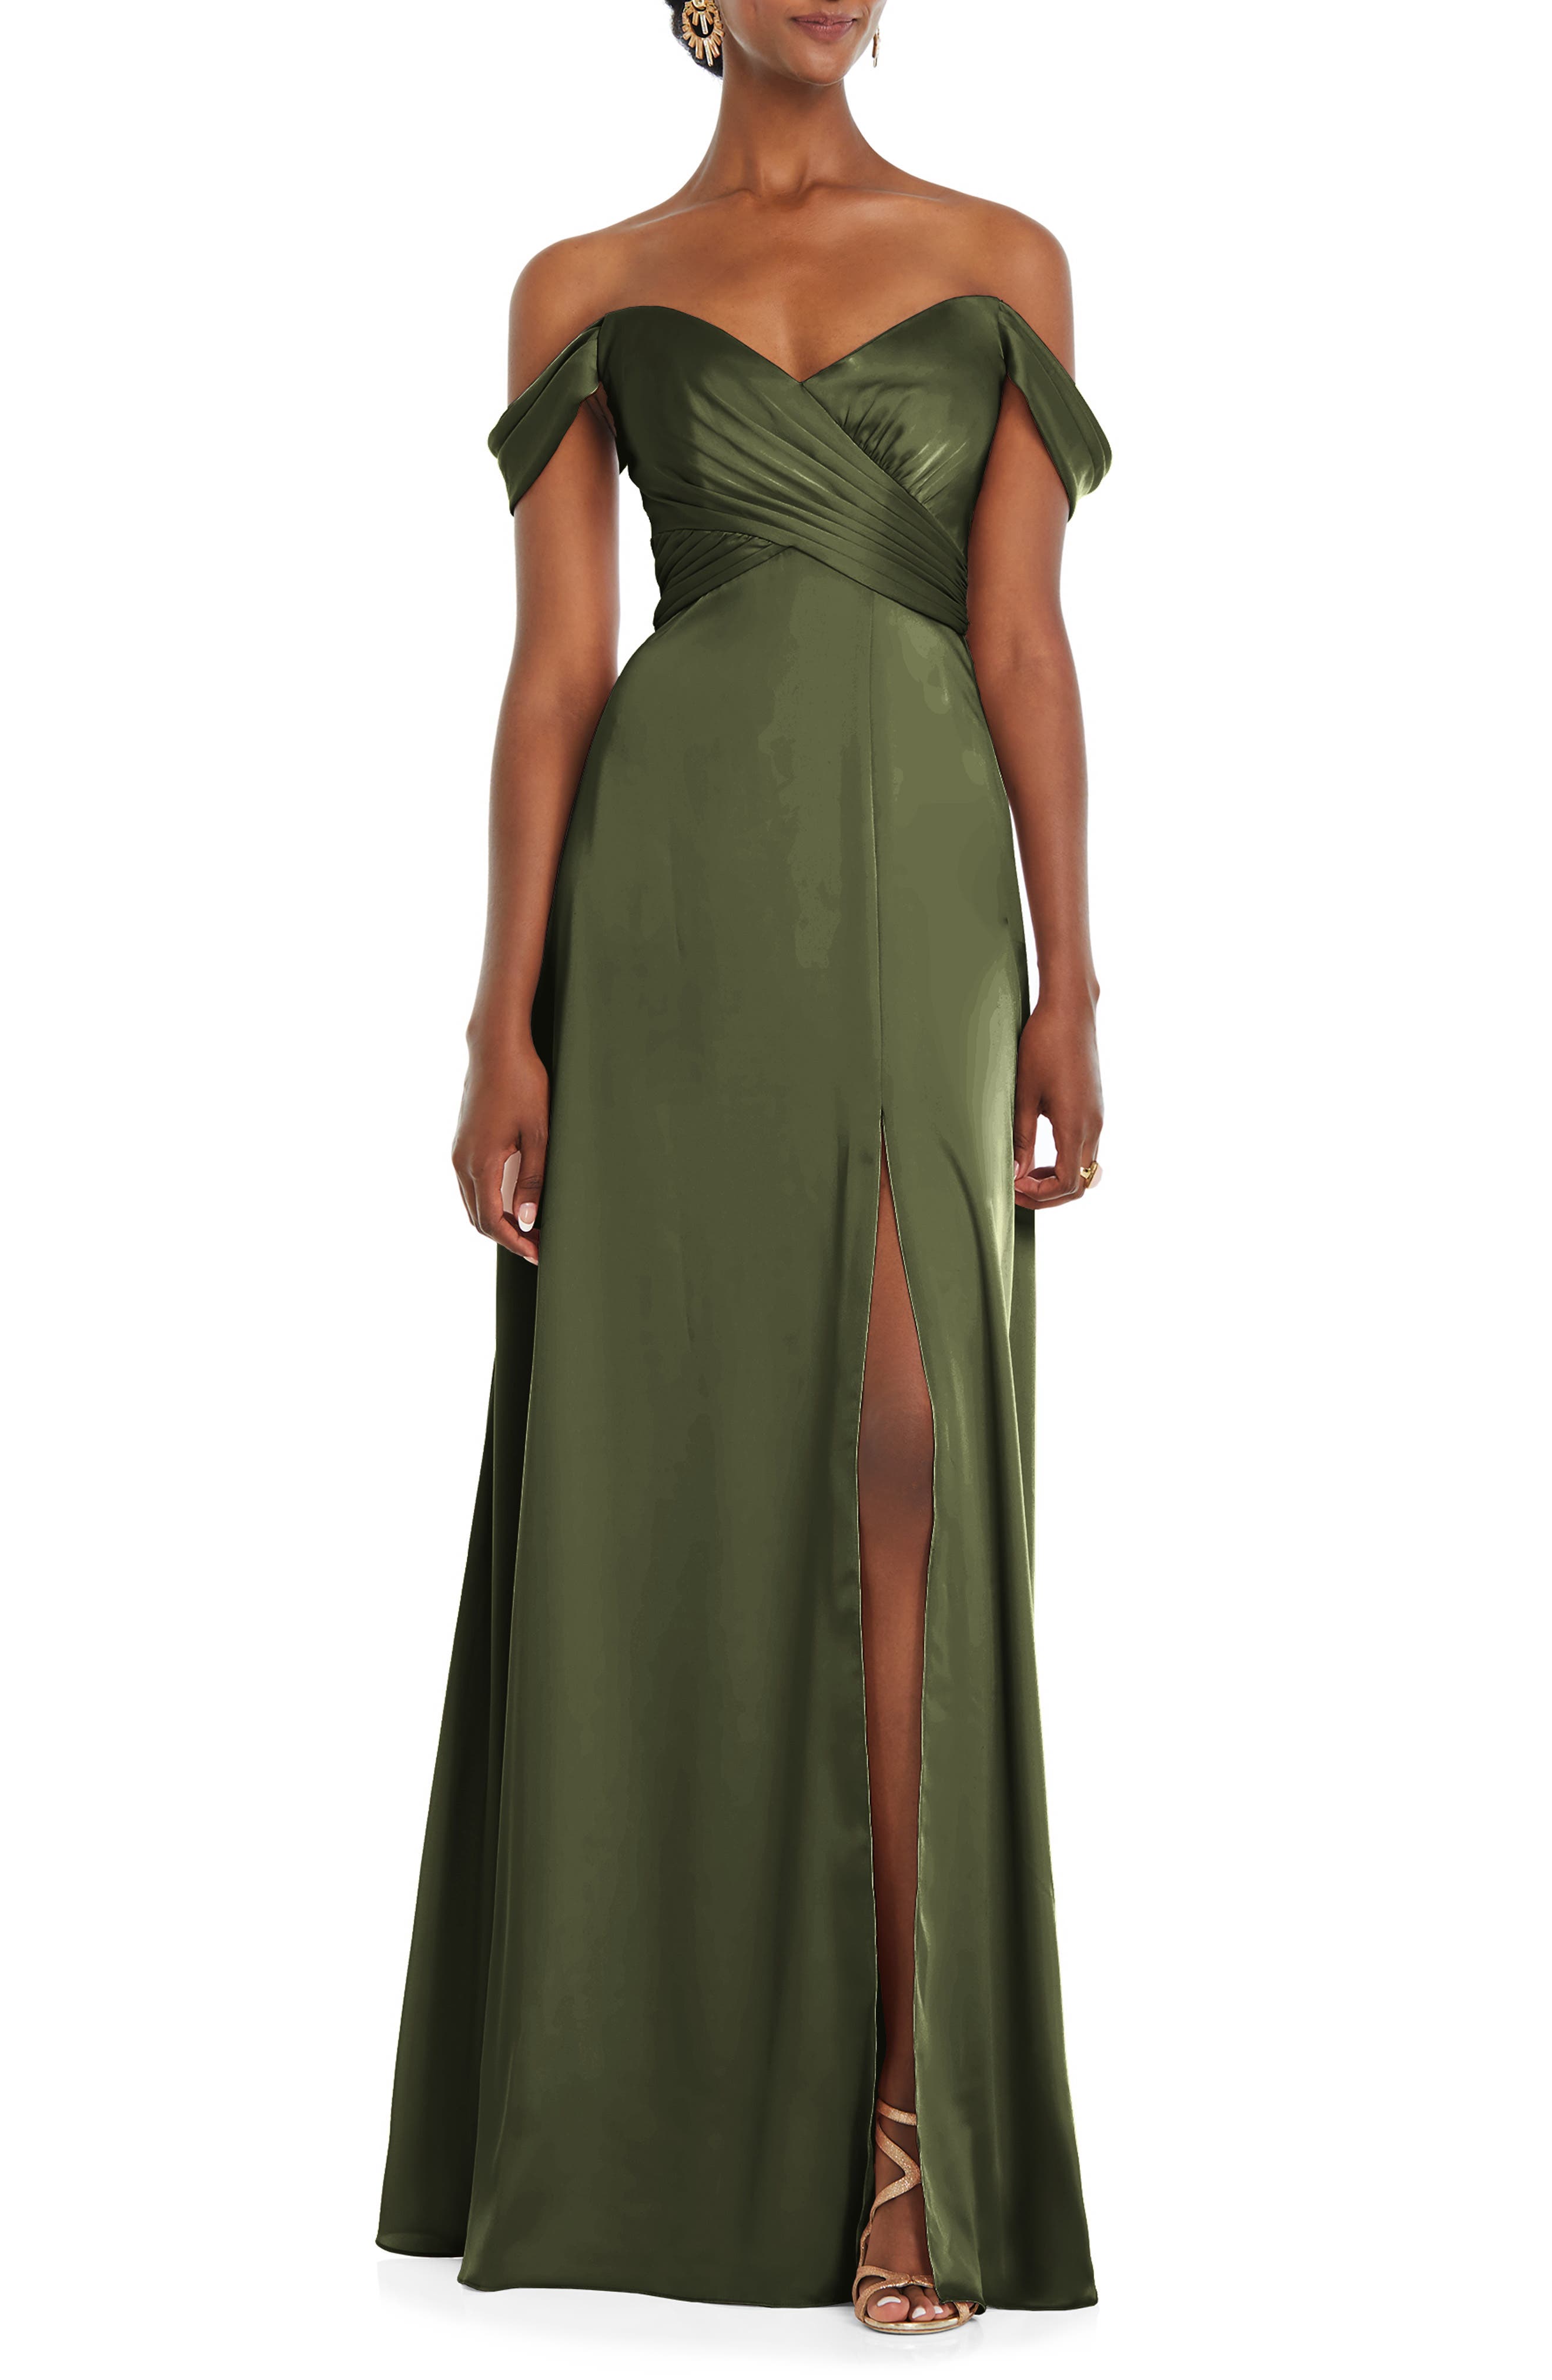 Women's Green Formal Dresses ☀ Evening ...